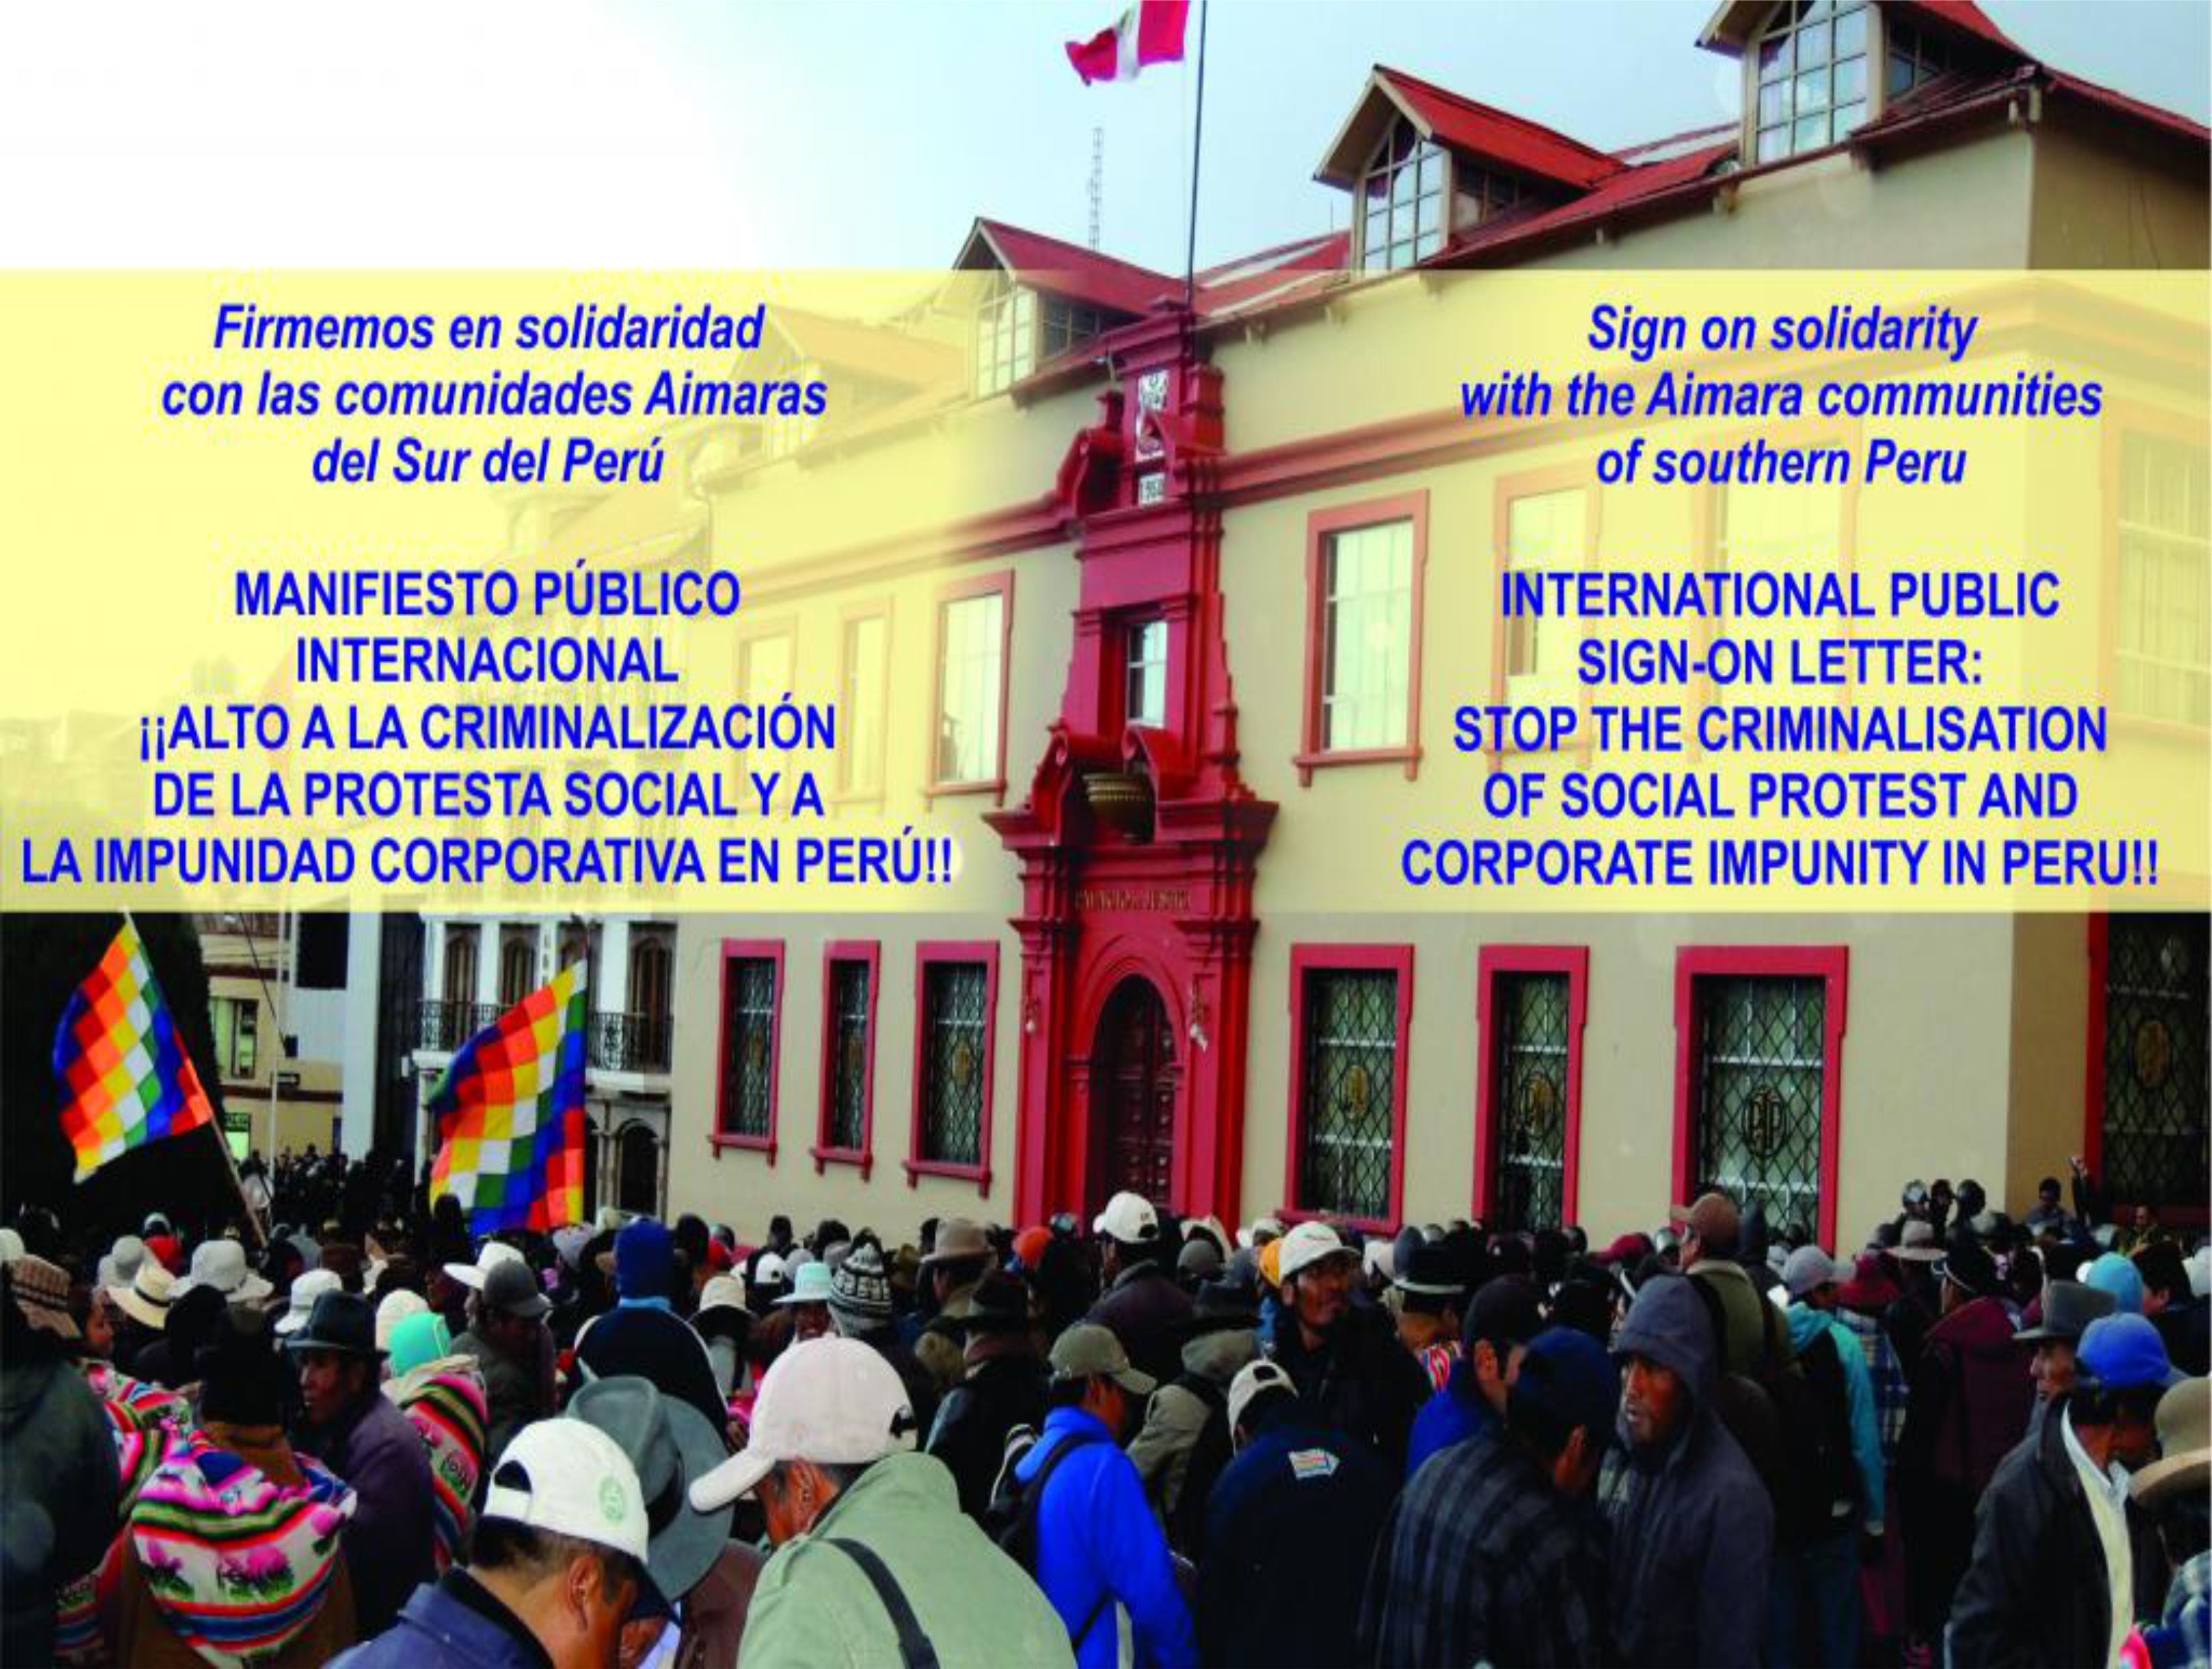 ¡ALTO A LA CRIMINALIZACIÓN DE LA PROTESTA SOCIAL Y A LA IMPUNIDAD CORPORATIVA EN PERÚ!